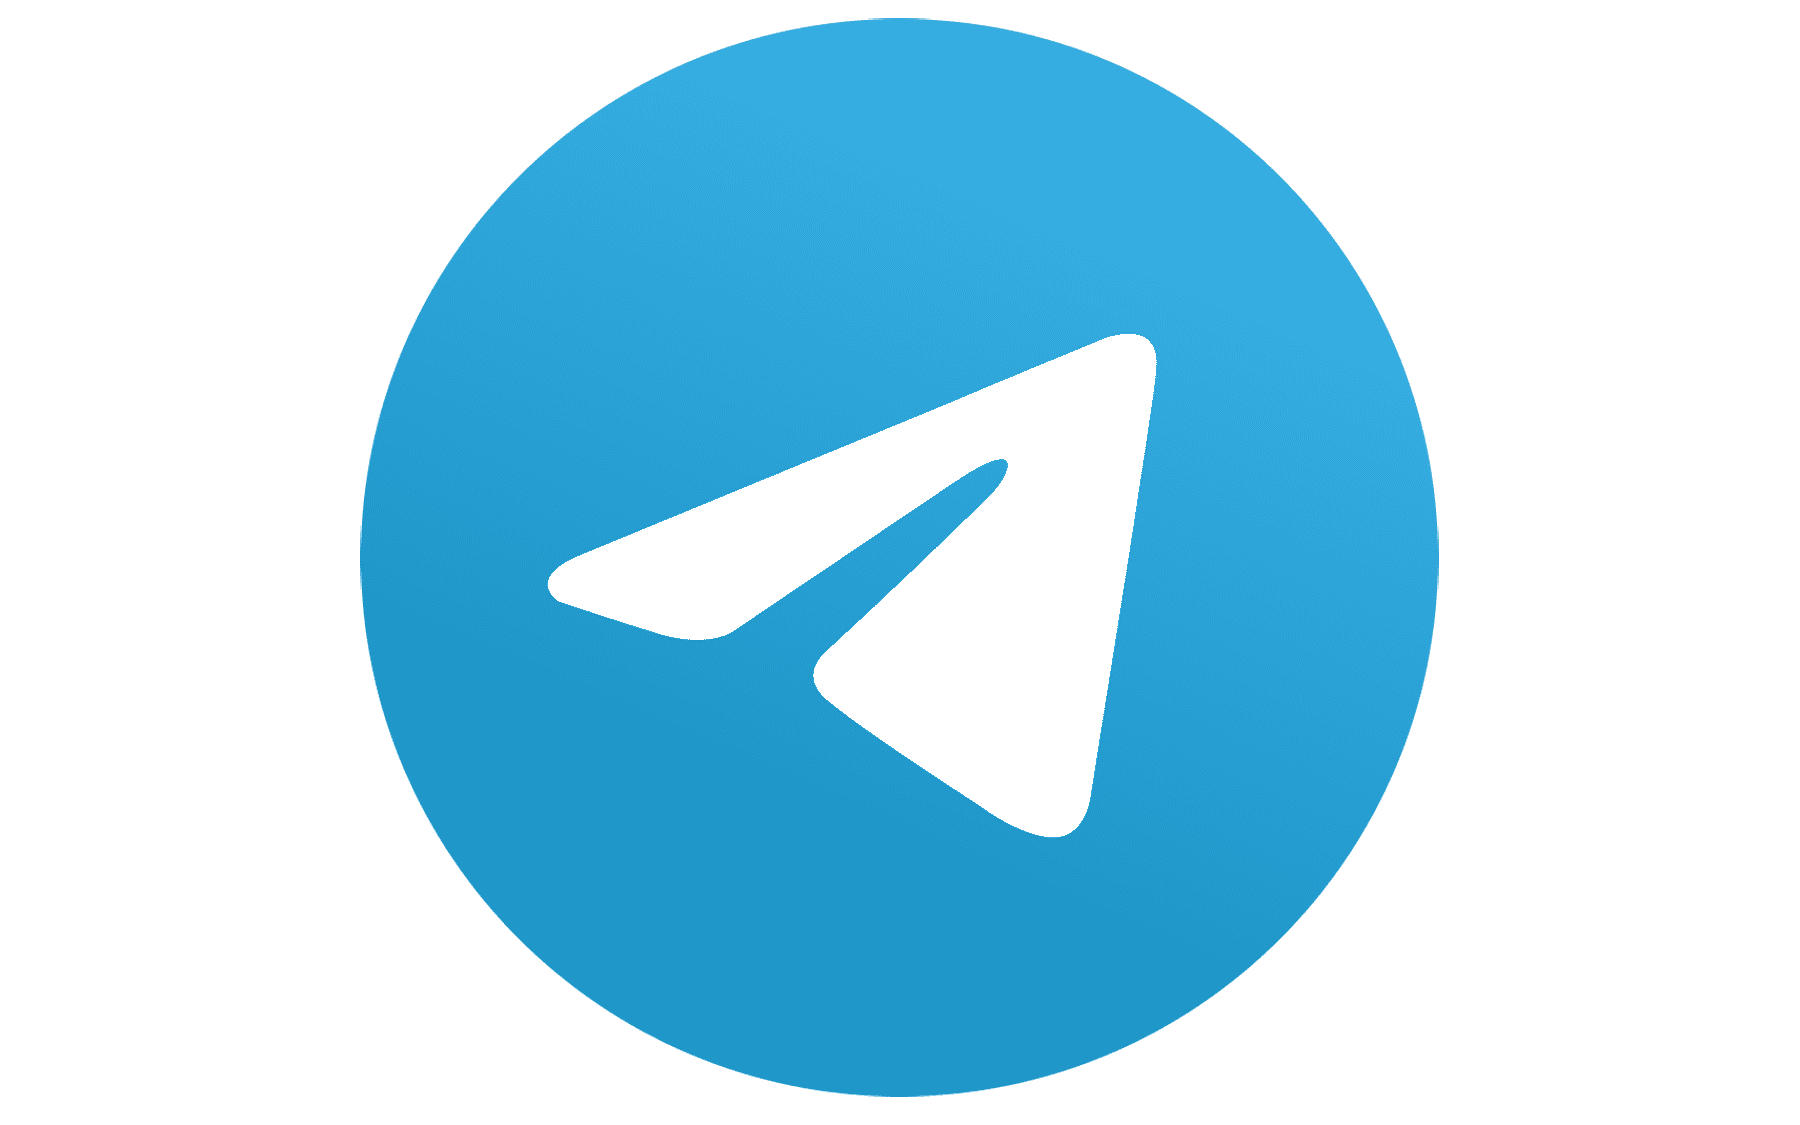 Edit sent messages in Telegram